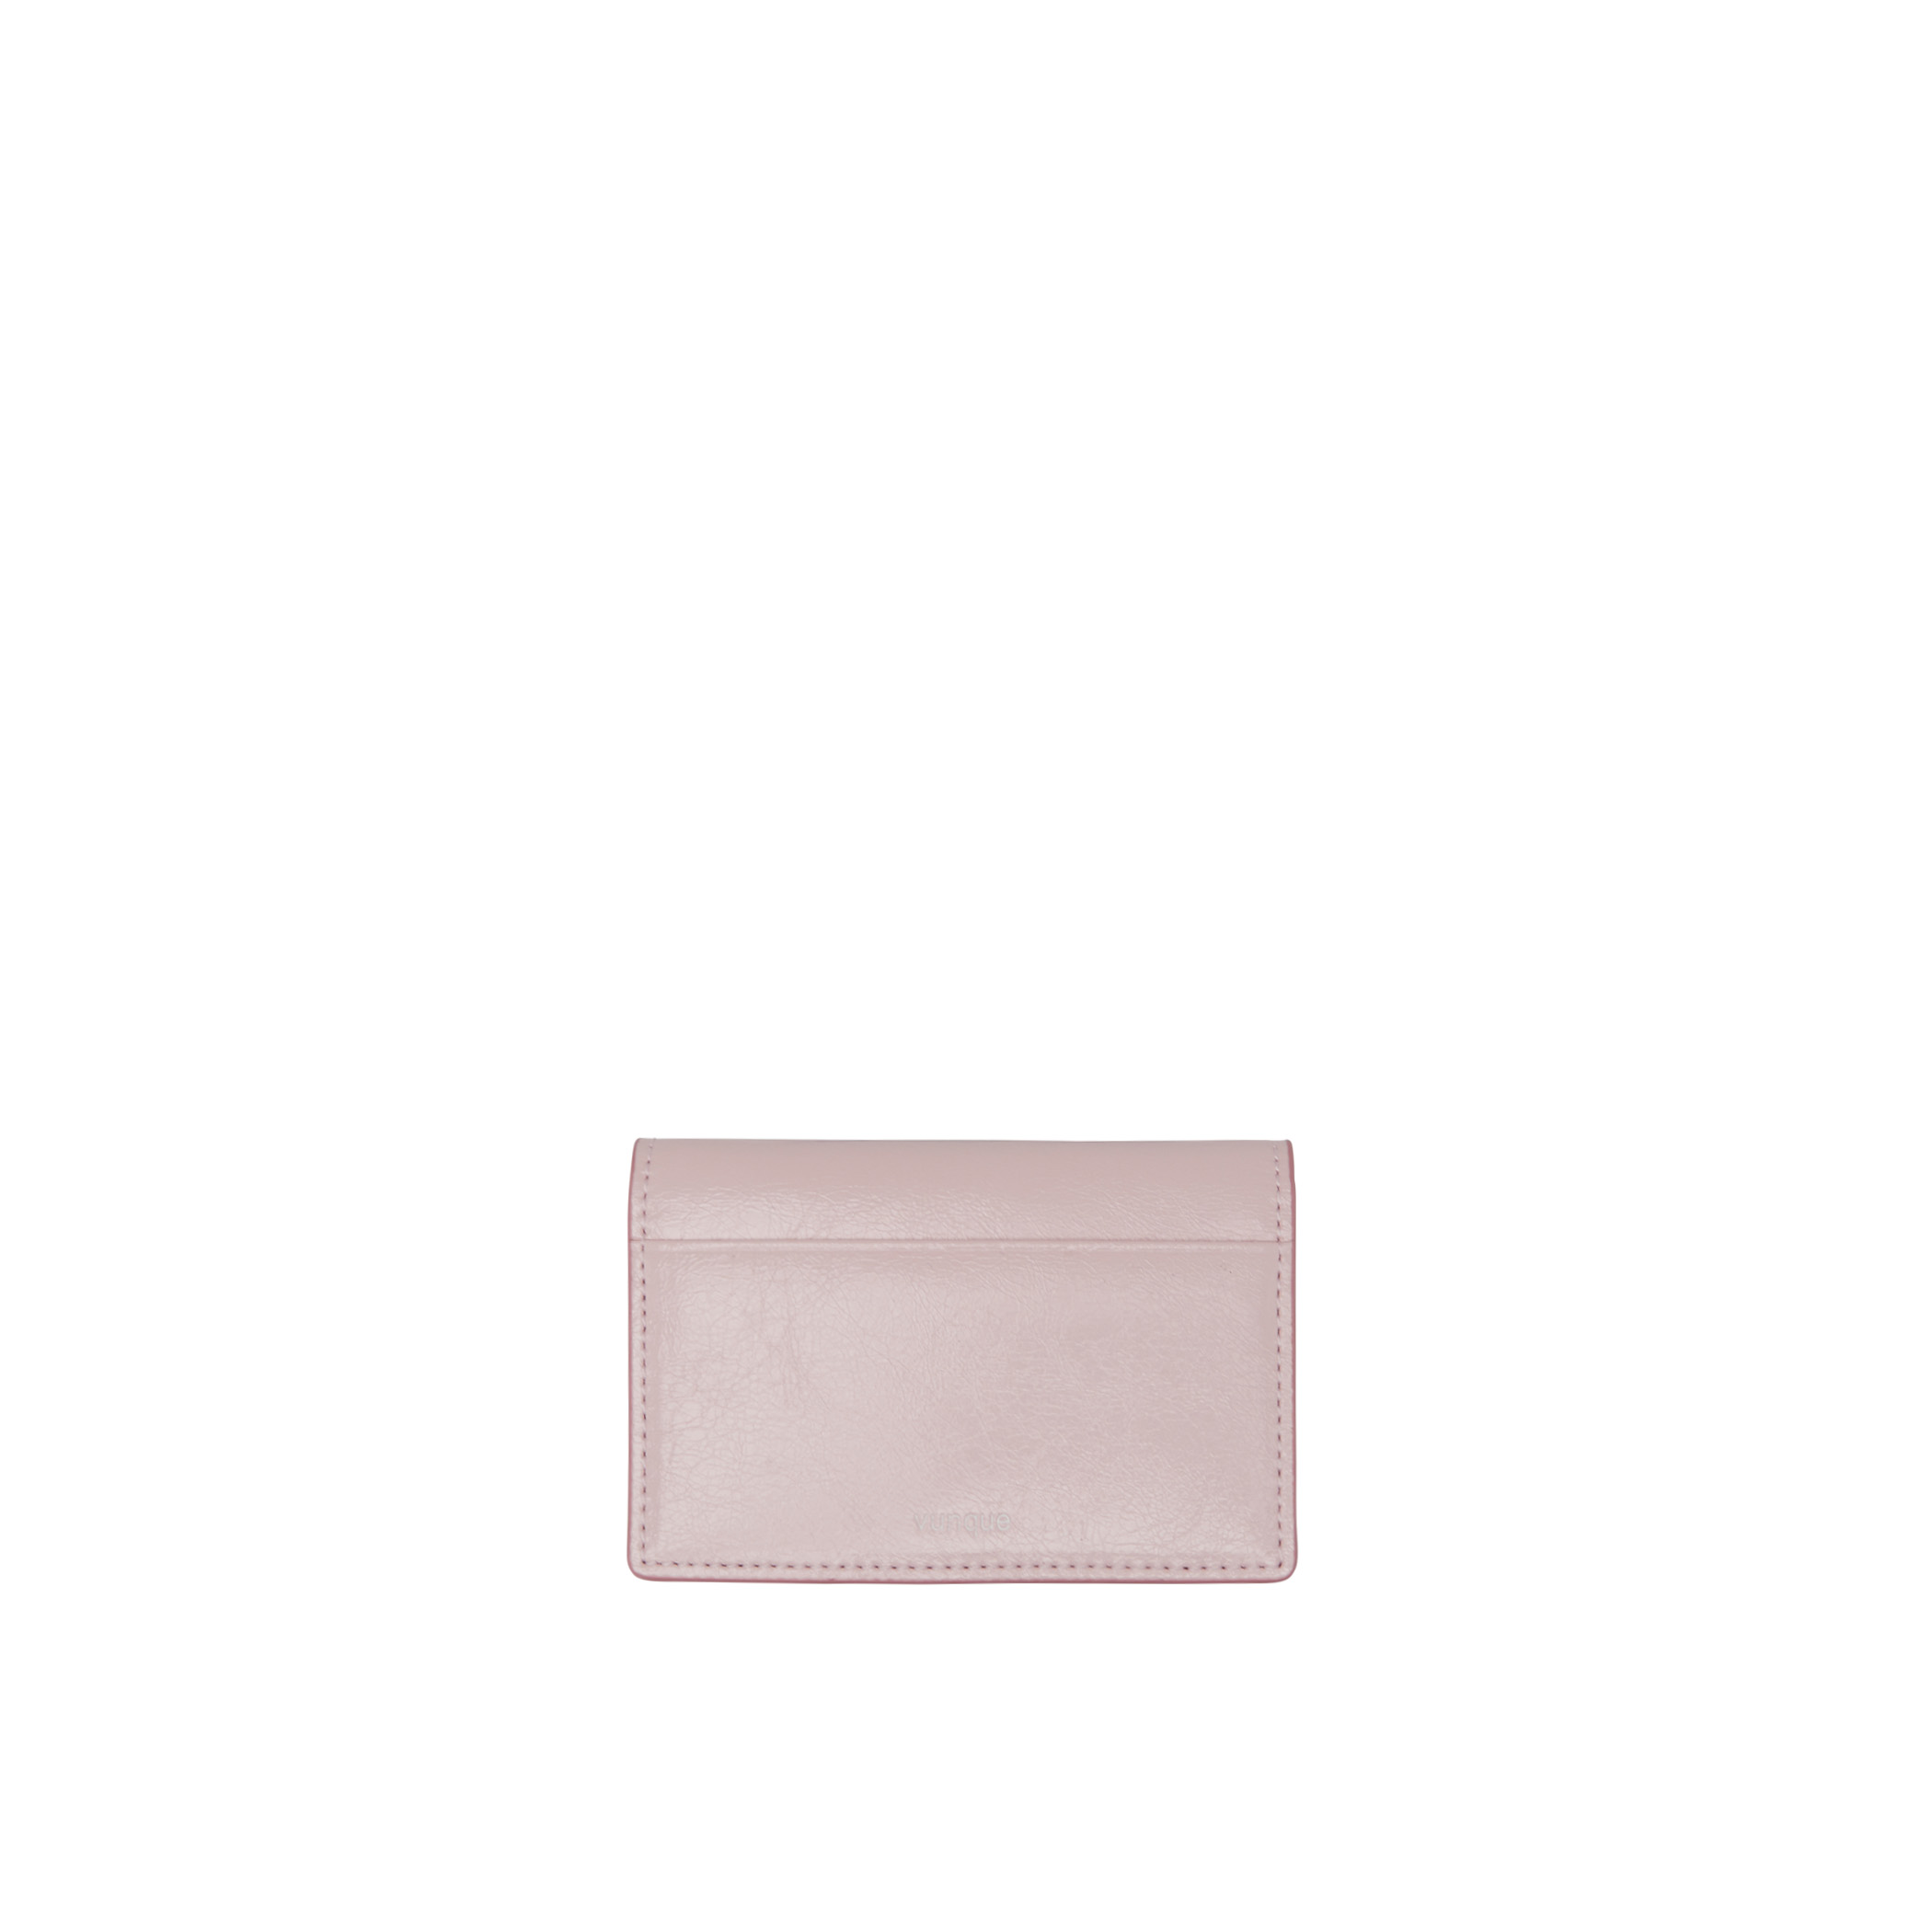 Toque Balaca Card Wallet (토크 발라카 카드지갑) Pale Pink